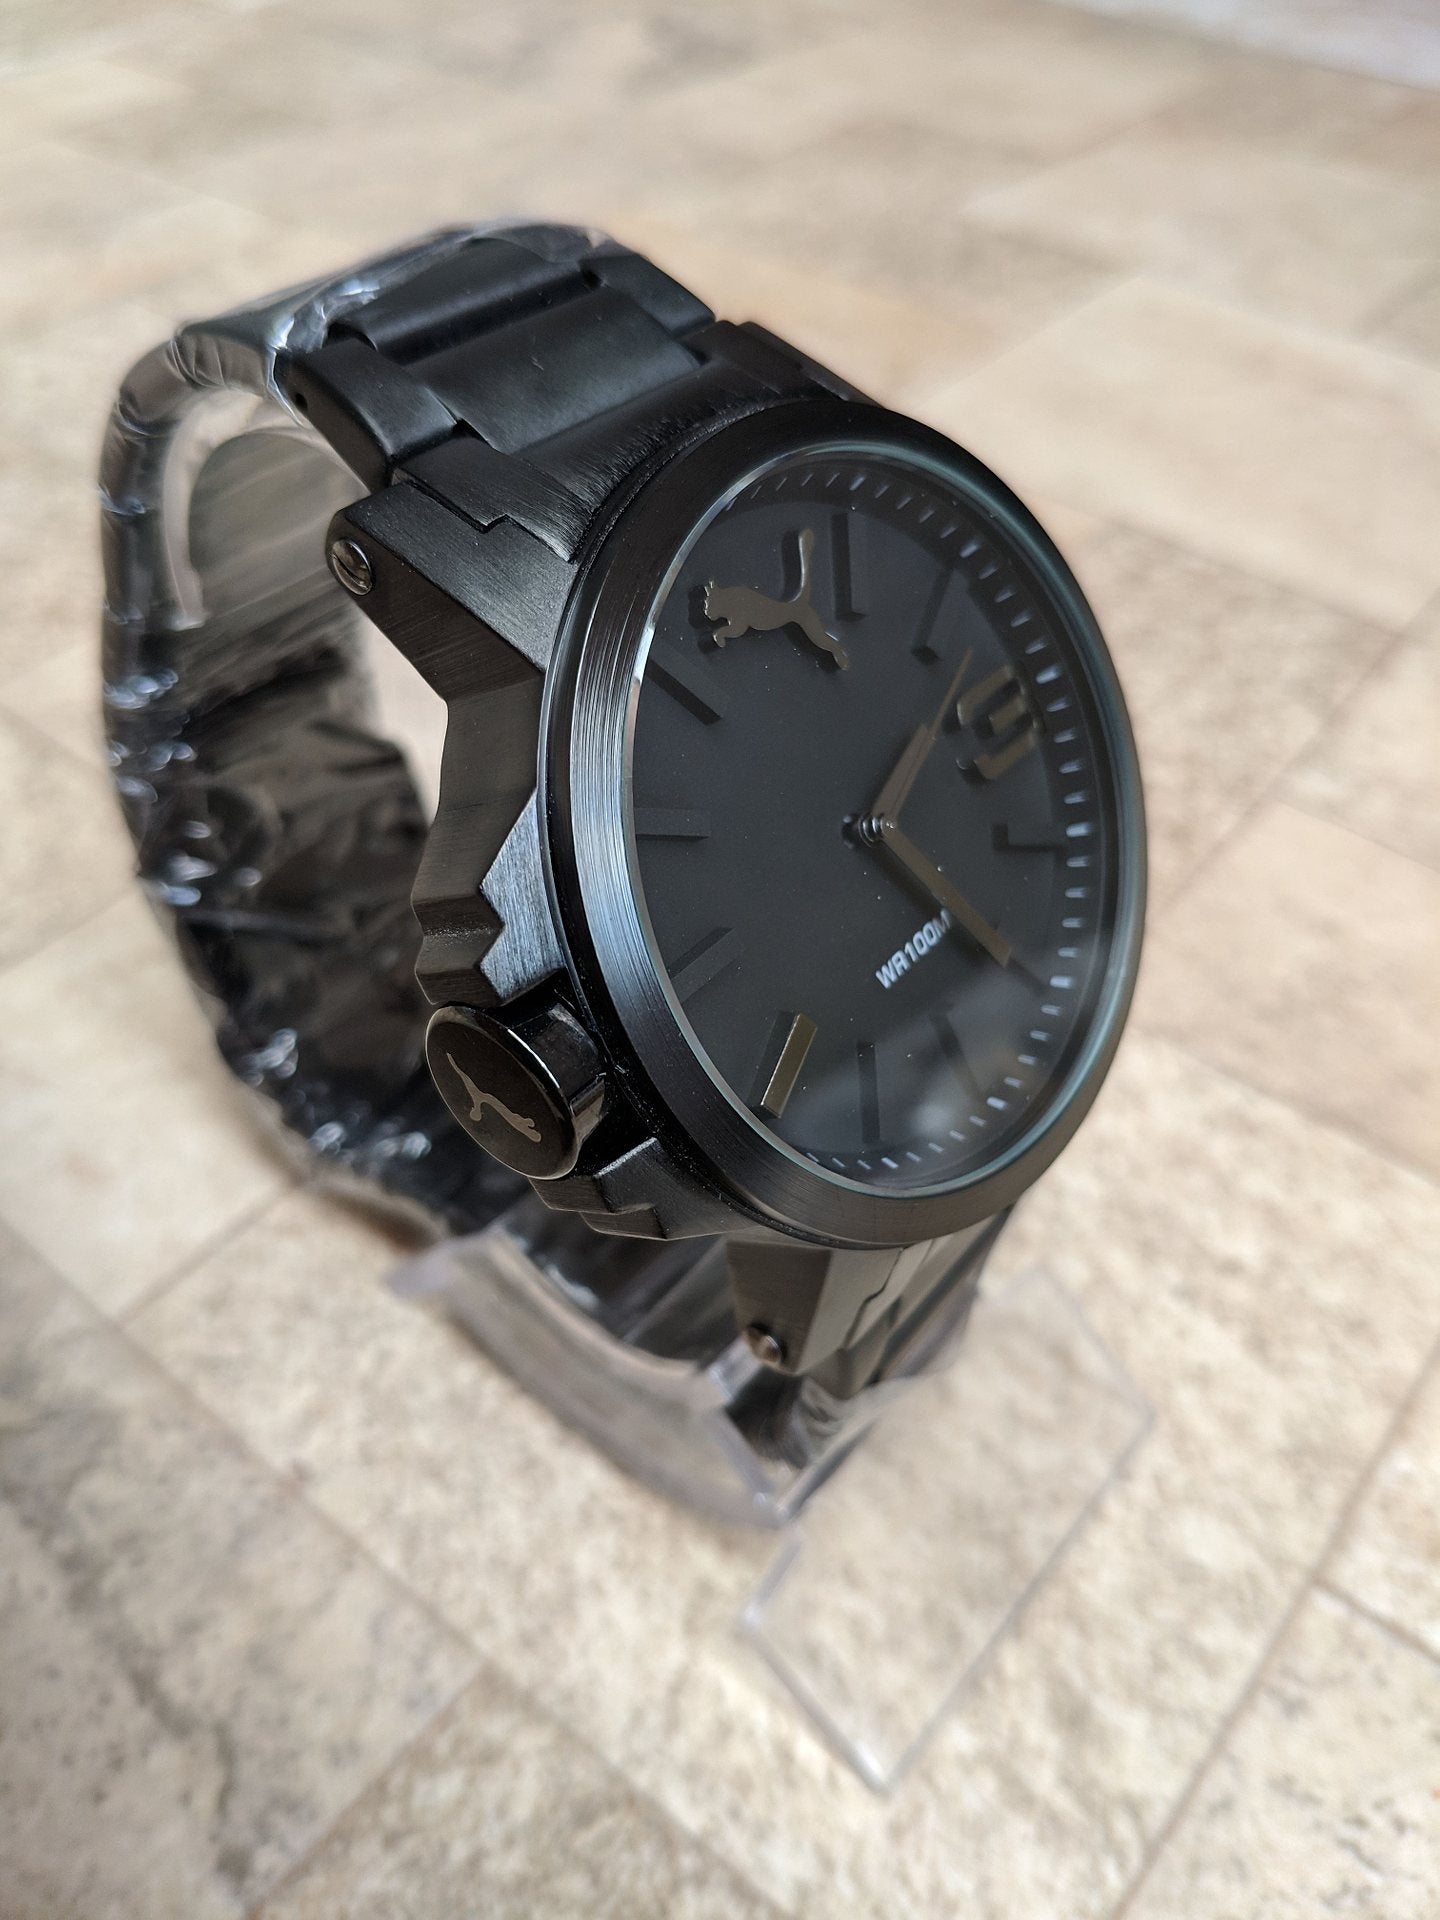 Relógio Preto Acabamento em Aço inoxidável a prova d'agua |Premium versão|